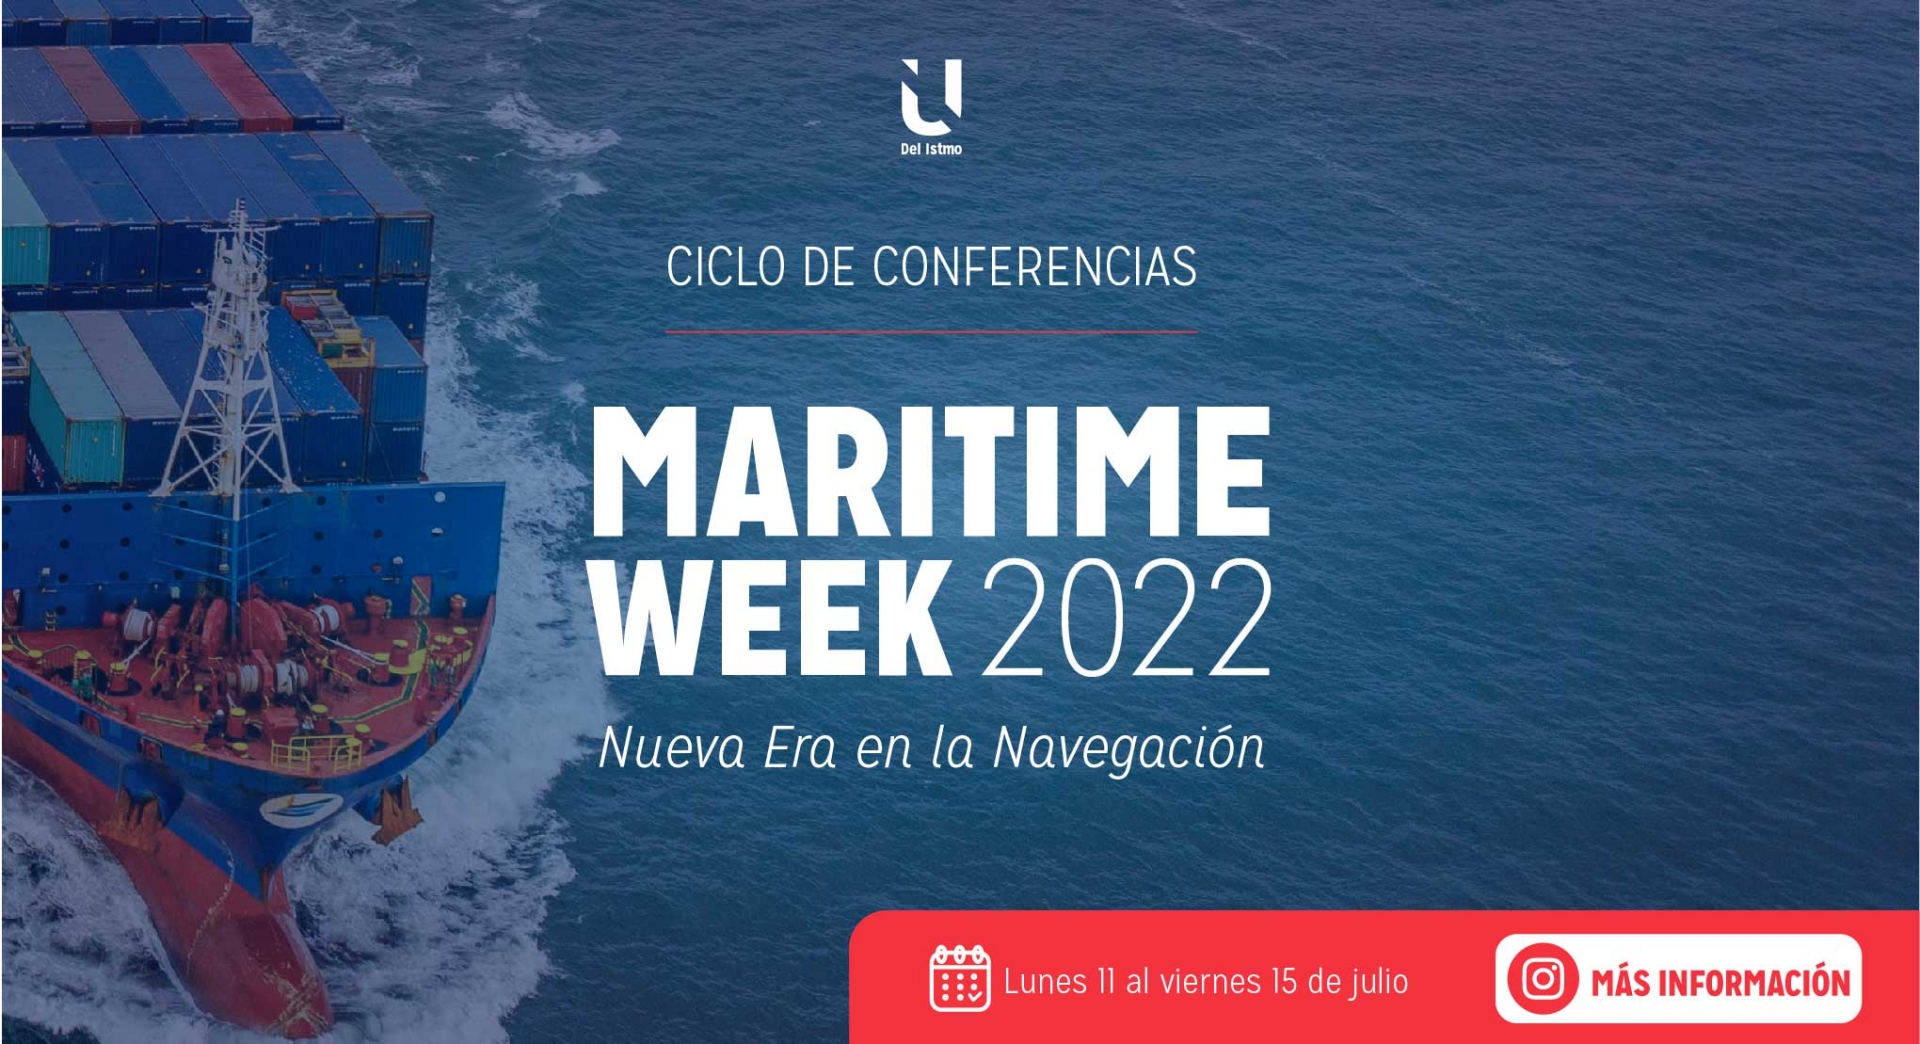 Ciclo de Conferencias Maritime Week